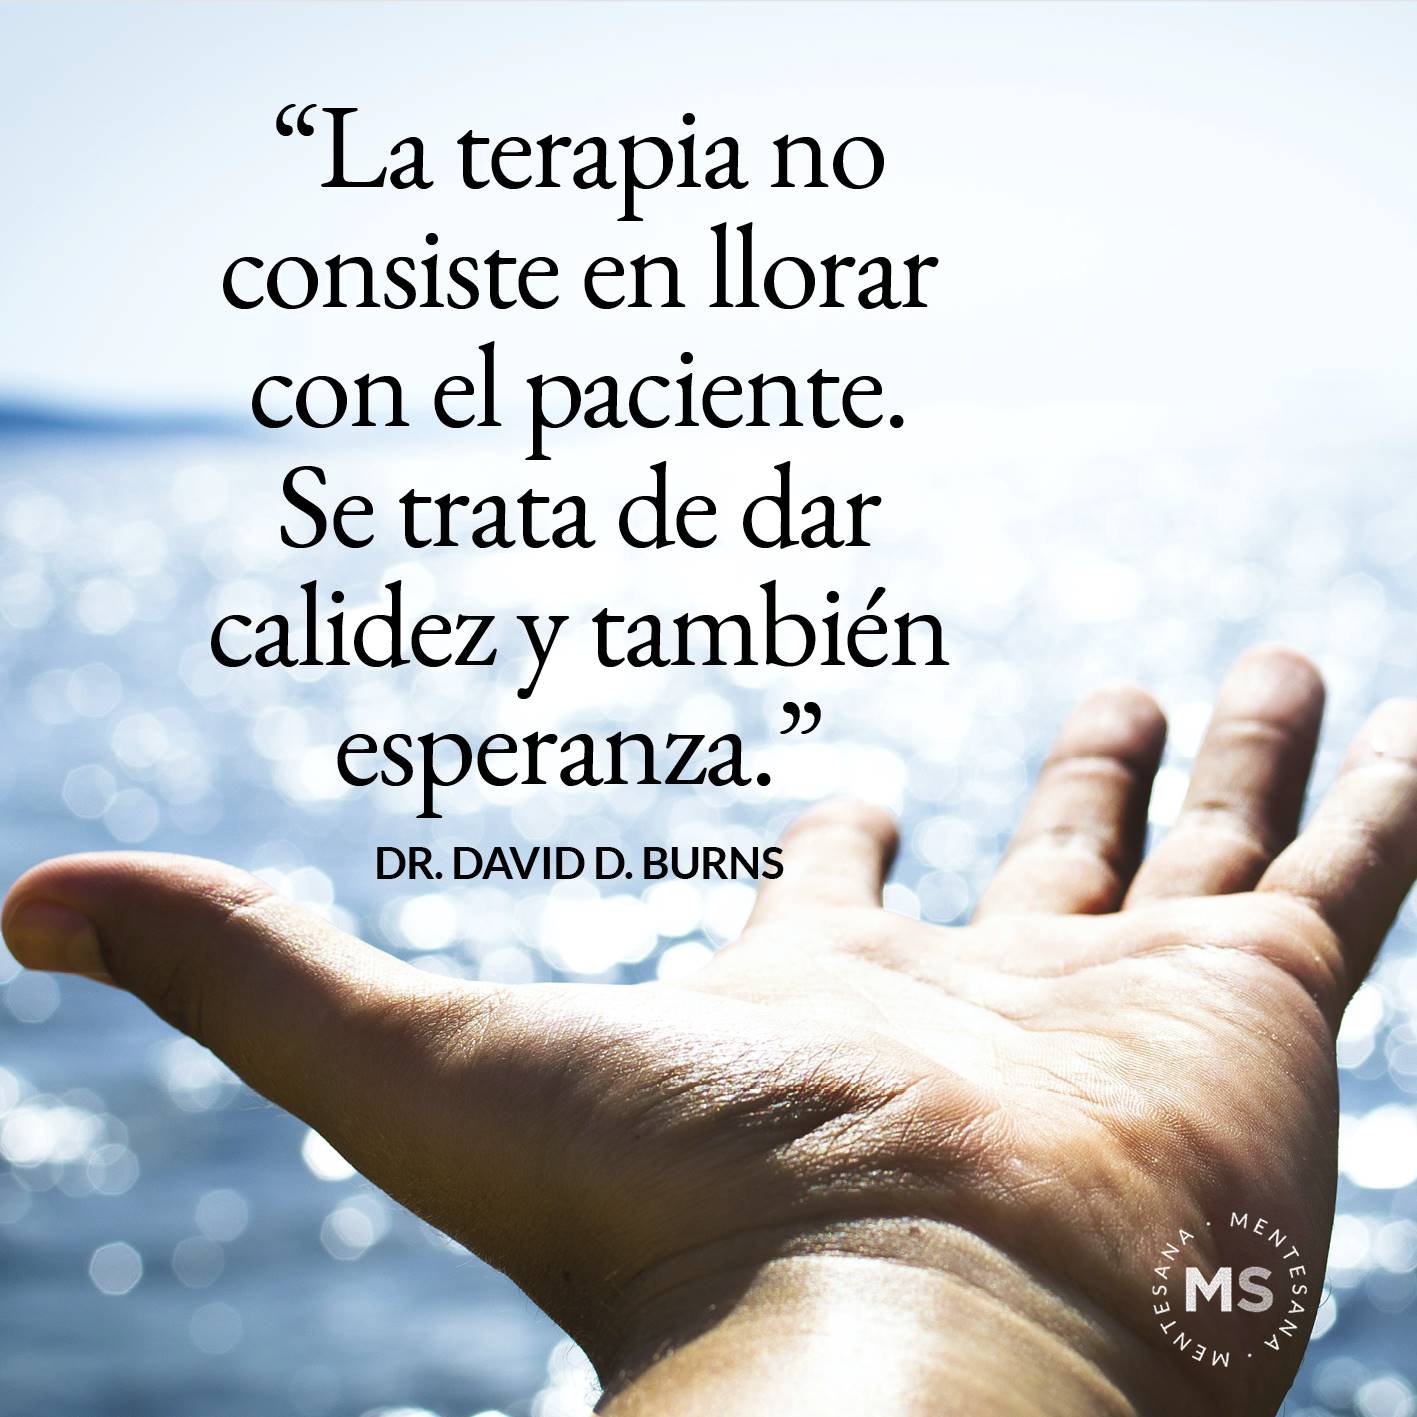 FRASES DIA DE LA DEPRESION2. “La terapia no consiste en llorar con el paciente. Se trata de dar calidez y también esperanza.” Dr. David D. Burns